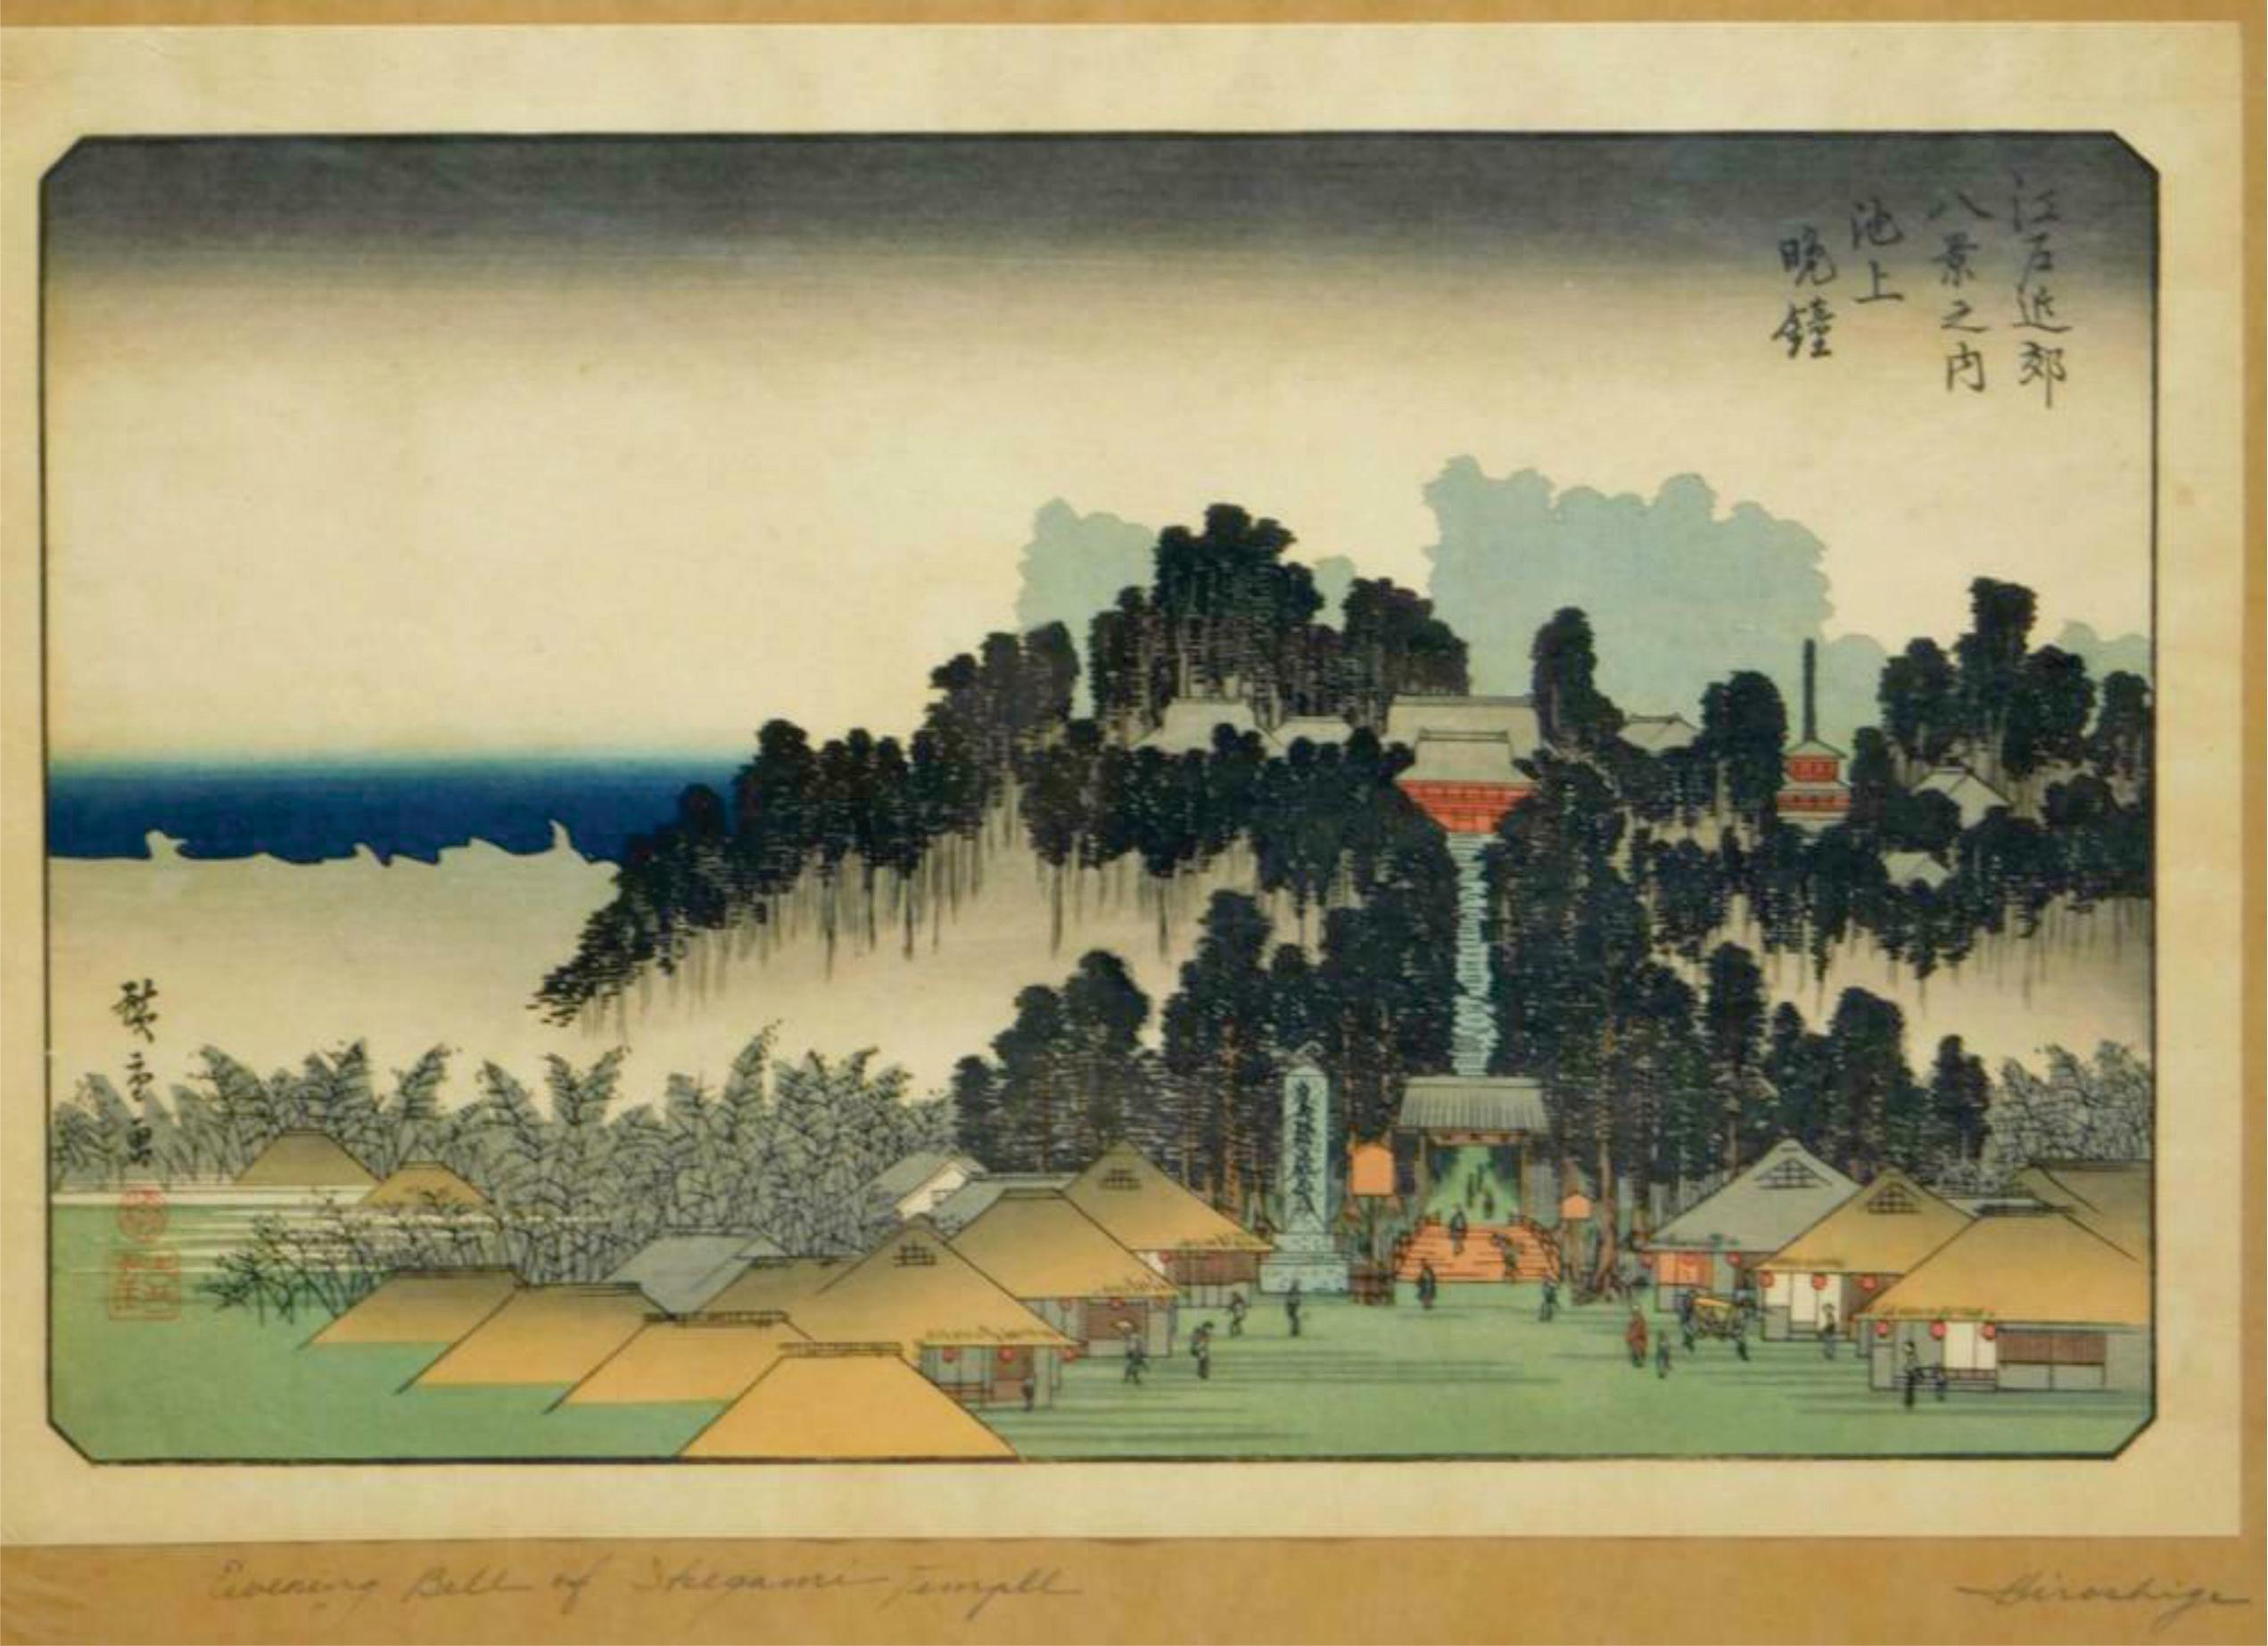 Cloche du soir à Ikegami fait partie des Huit vues des environs d'Edo et de L'homme conduisant un bœuf entre des pentes de montagne.

Artiste :
Utagawa Hiroshige est reconnu comme un maître de la tradition de la gravure sur bois ukiyo-e. Il a